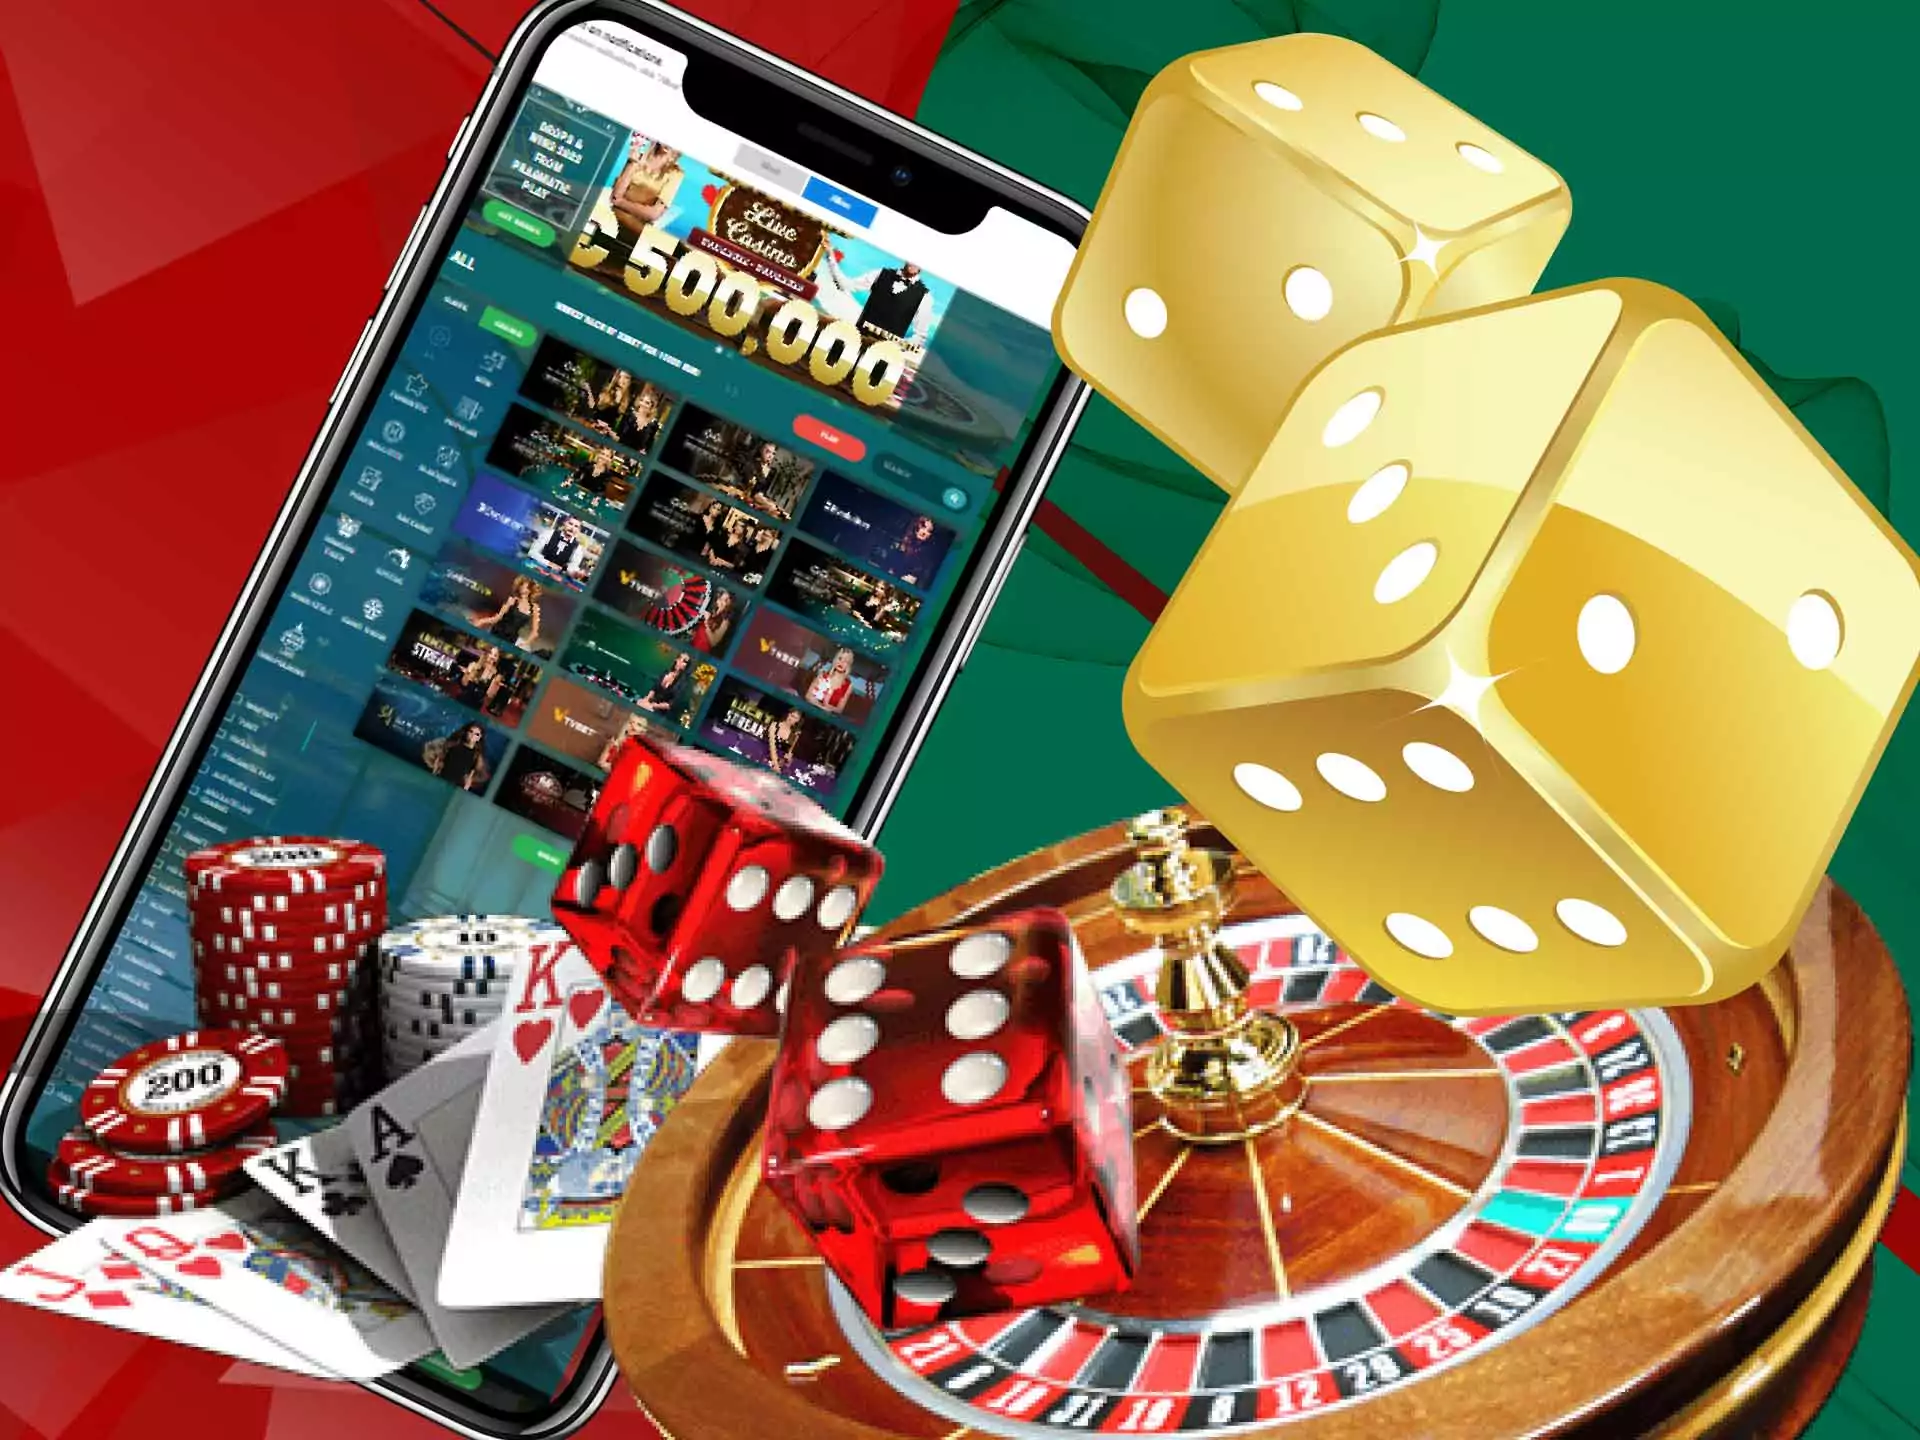 22Bet also offers an online casino games.